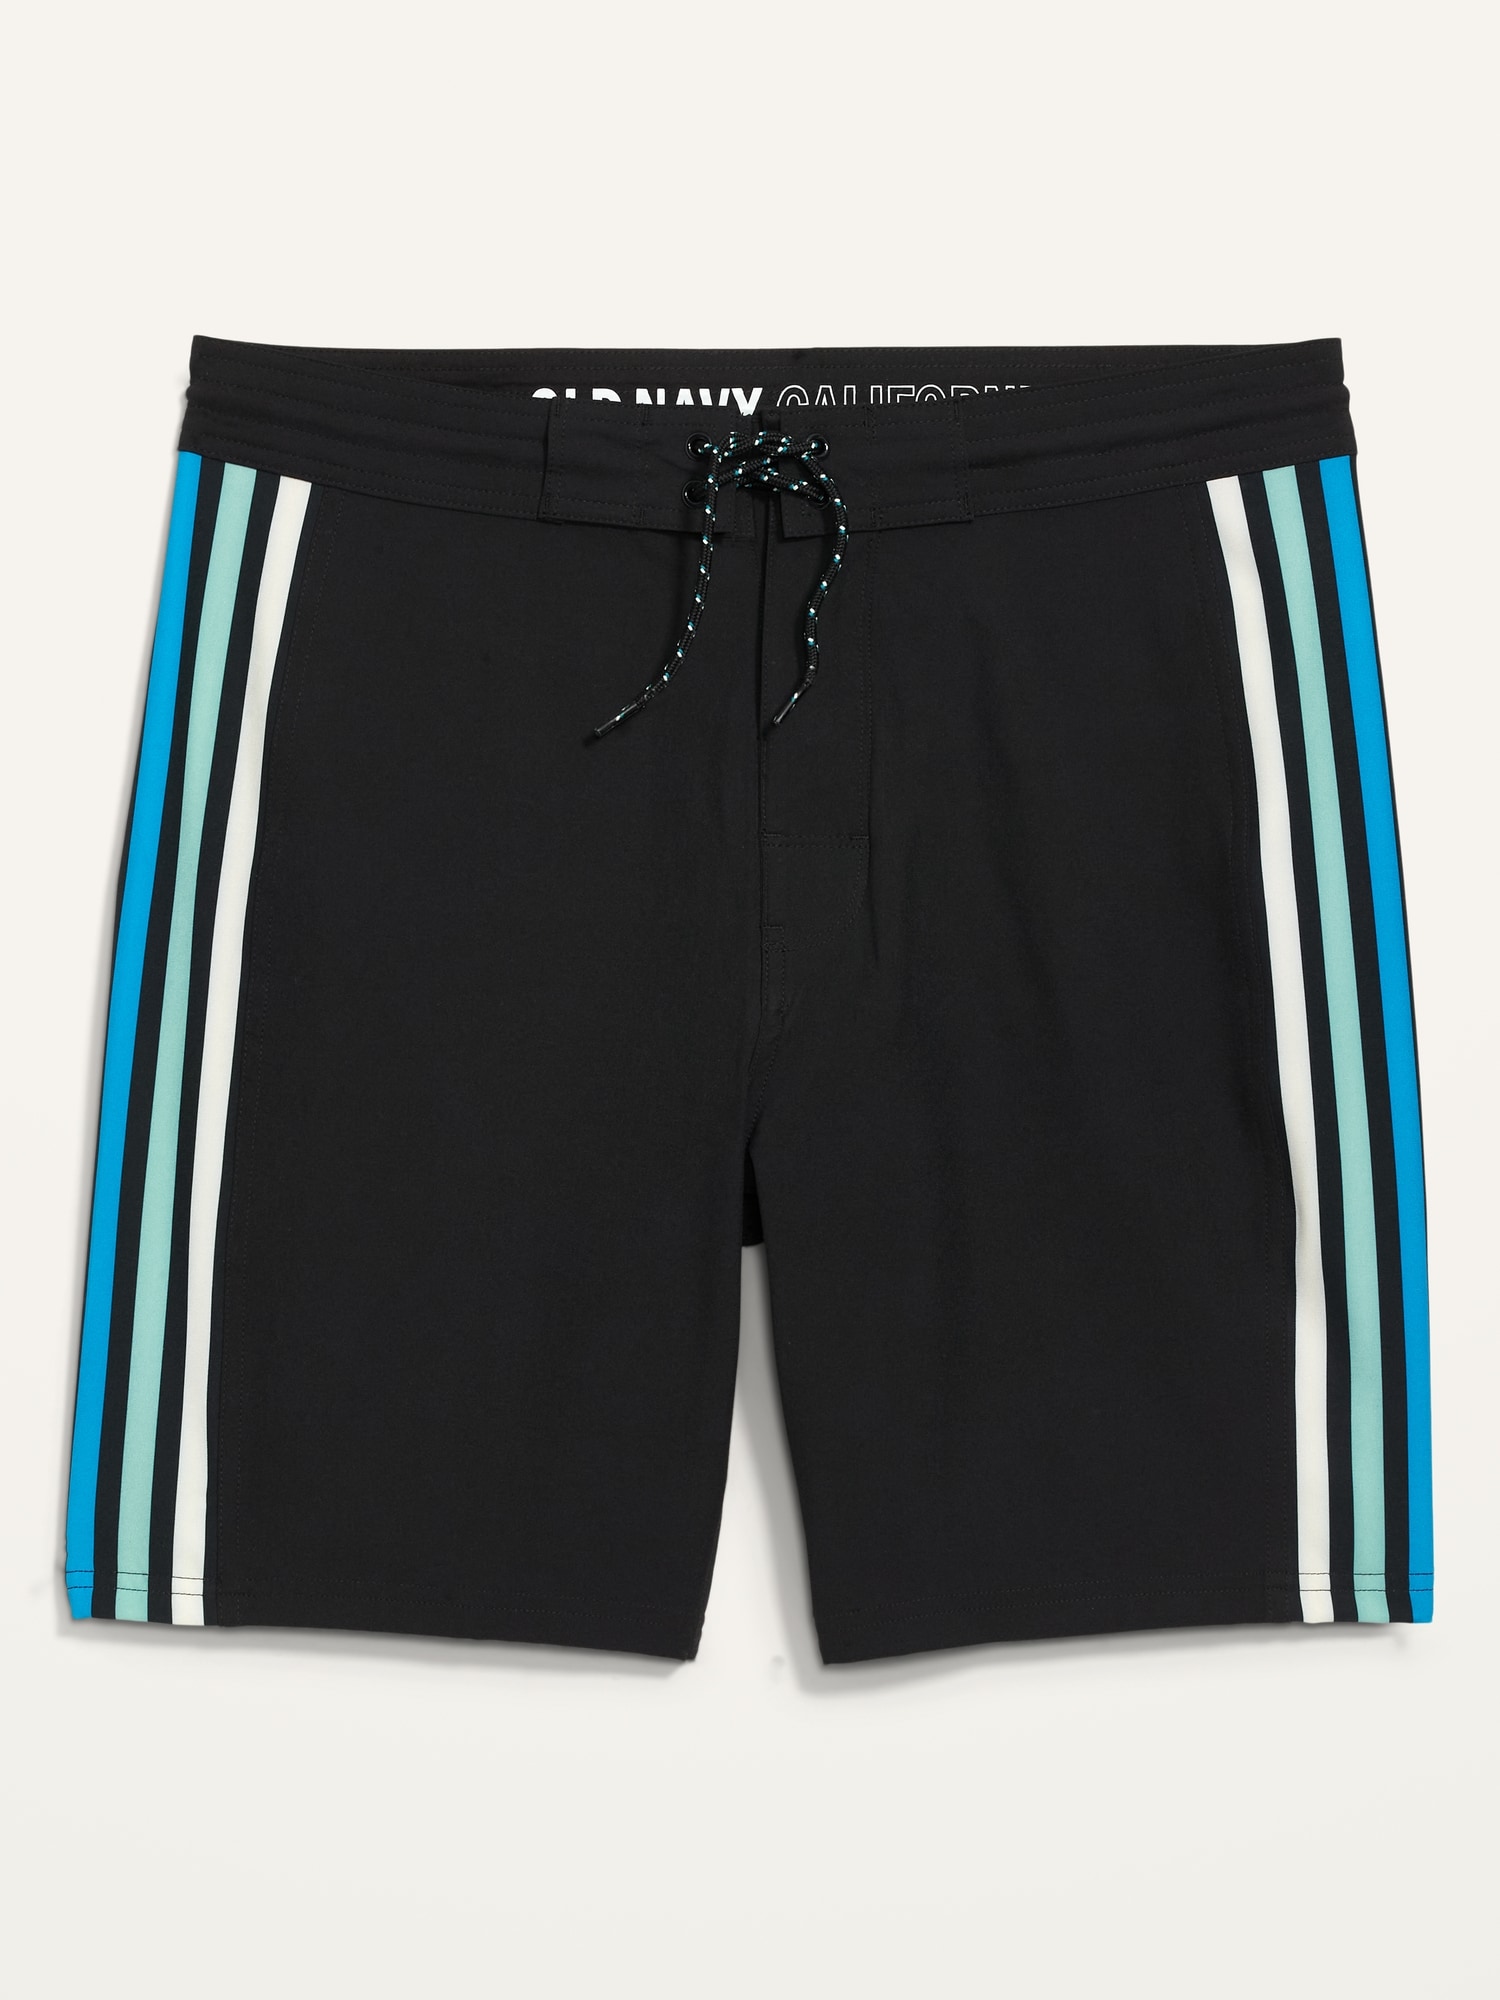 Built-In Flex Side-Stripe Board Shorts -- 8-inch inseam